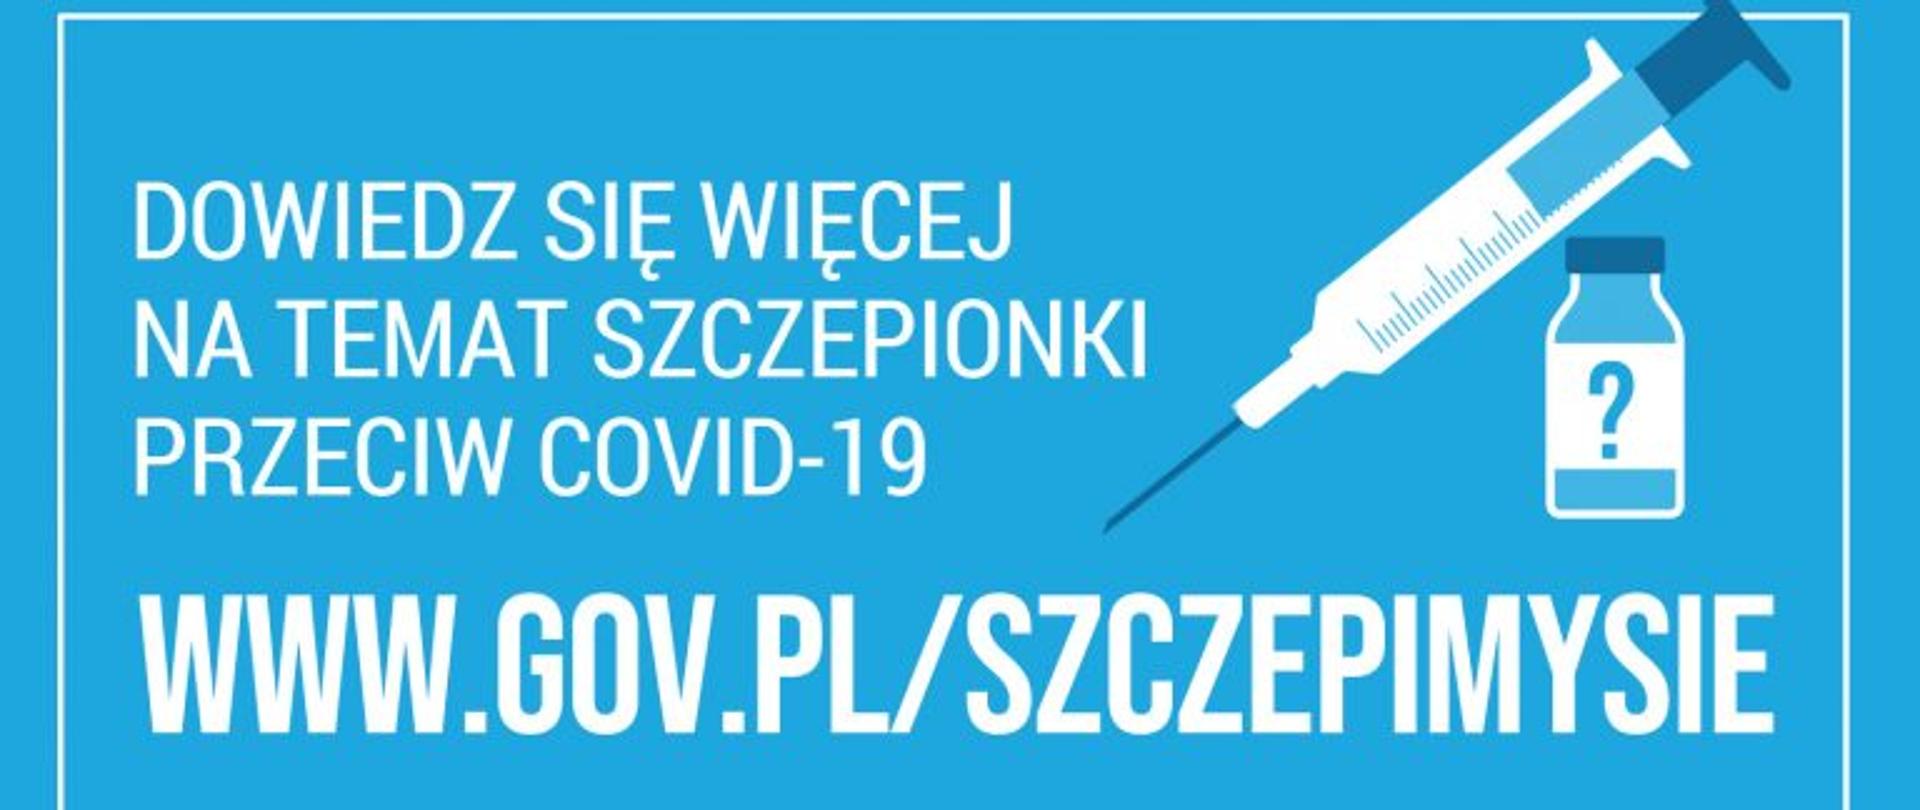 Na zdjęciu widoczna jest szczepionka oraz napis, iż można więcej się dowiedzieć na stroniw www.gov.pl/szczepimysie